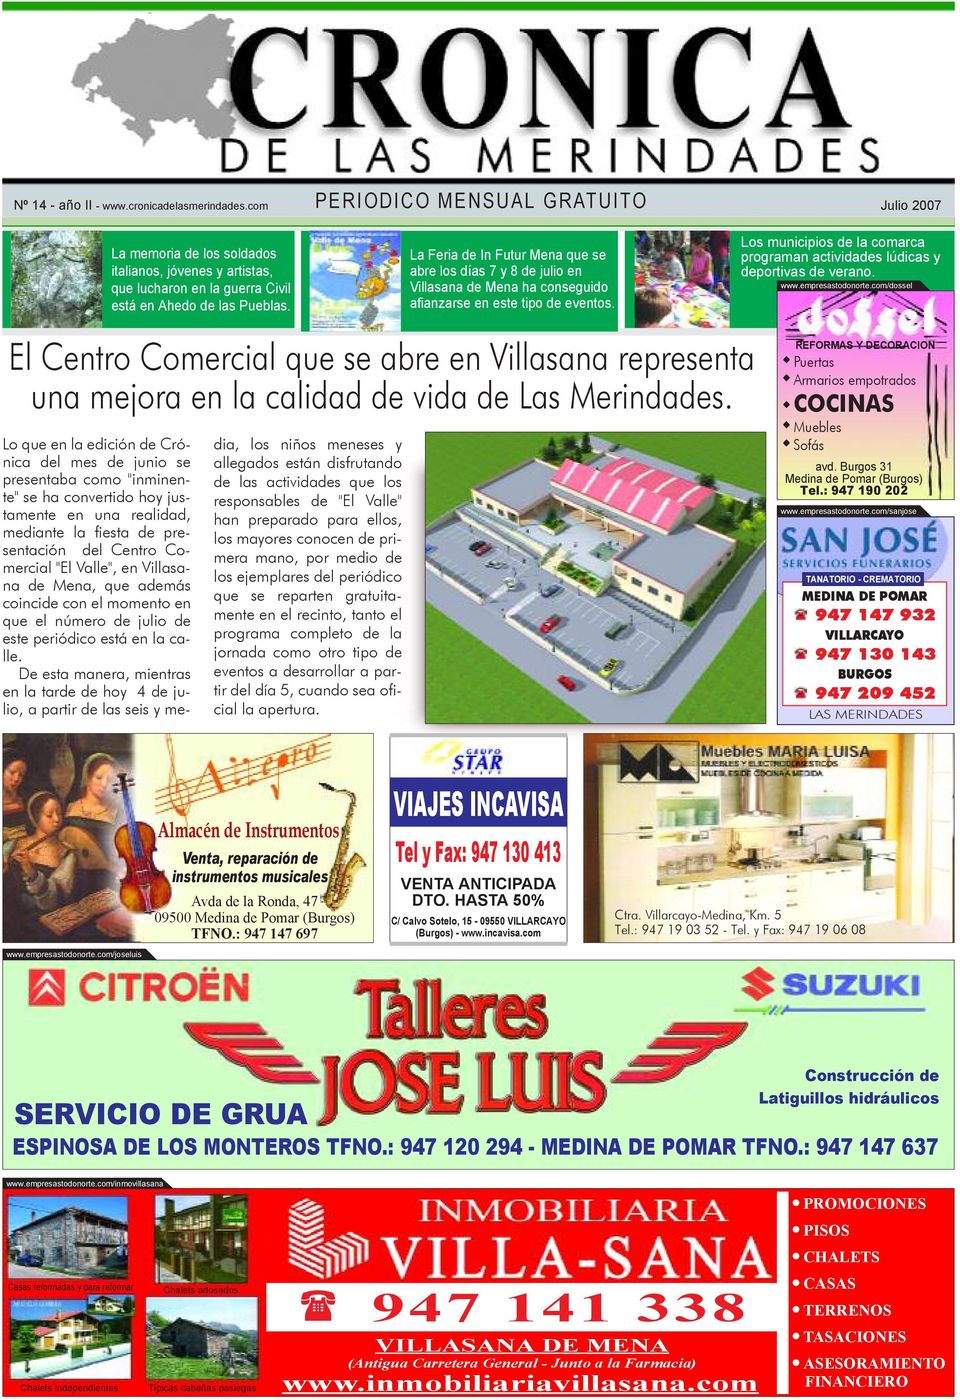 Julio 2007 Los municipios de la comarca programan actividades lúdicas y deportivas de verano. www.empresastodonorte.